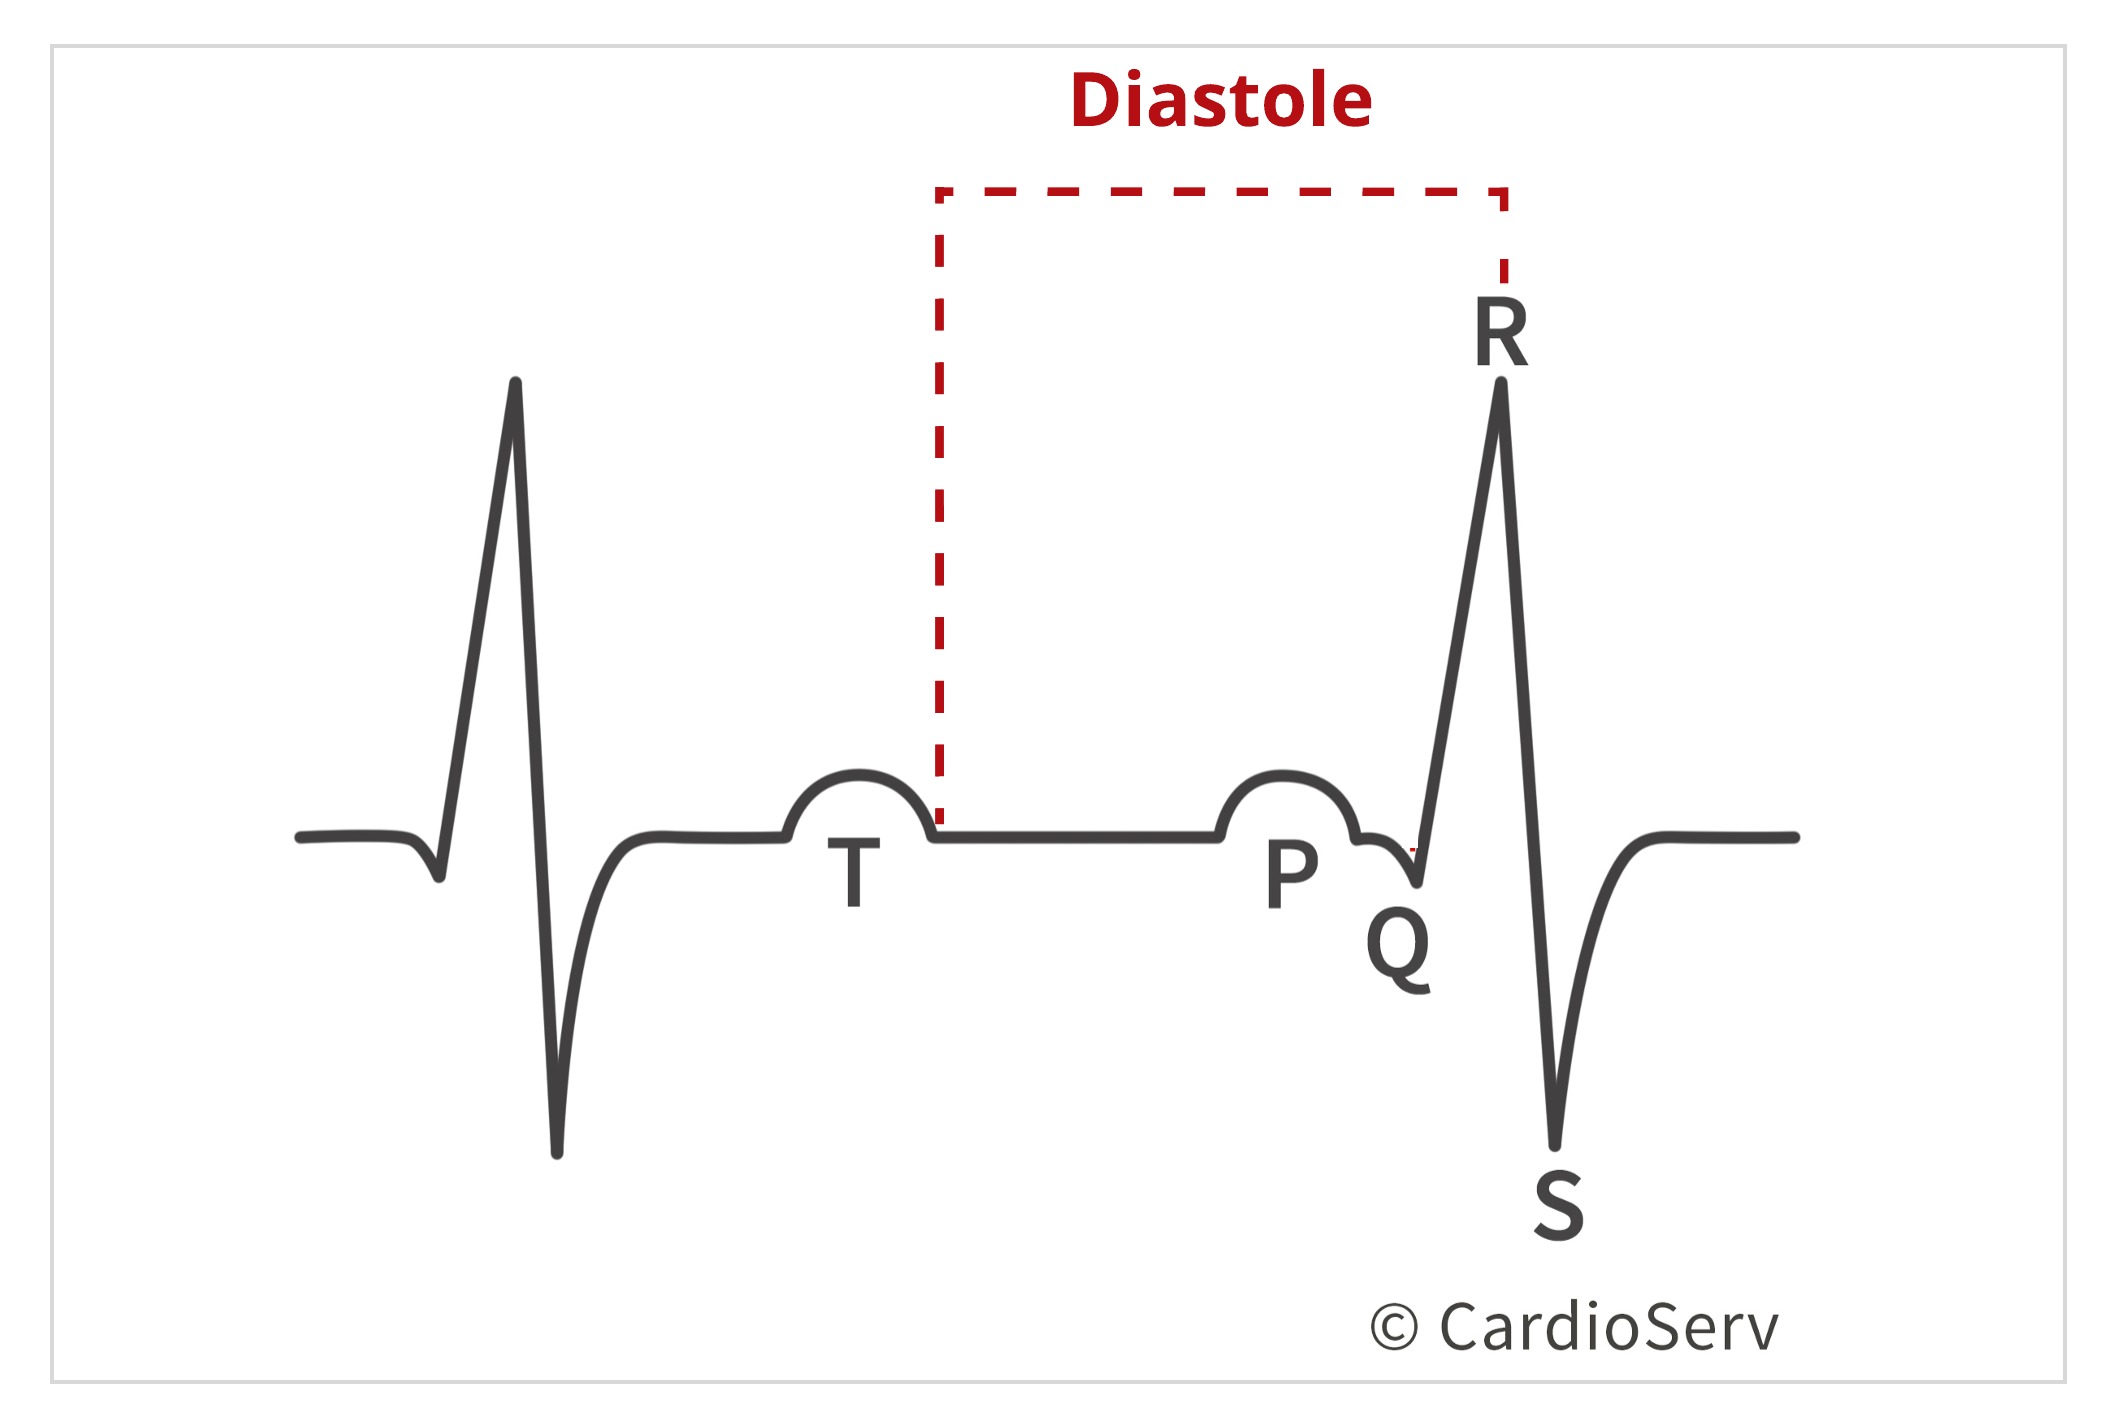 Diastole in Cardiac Cycle 